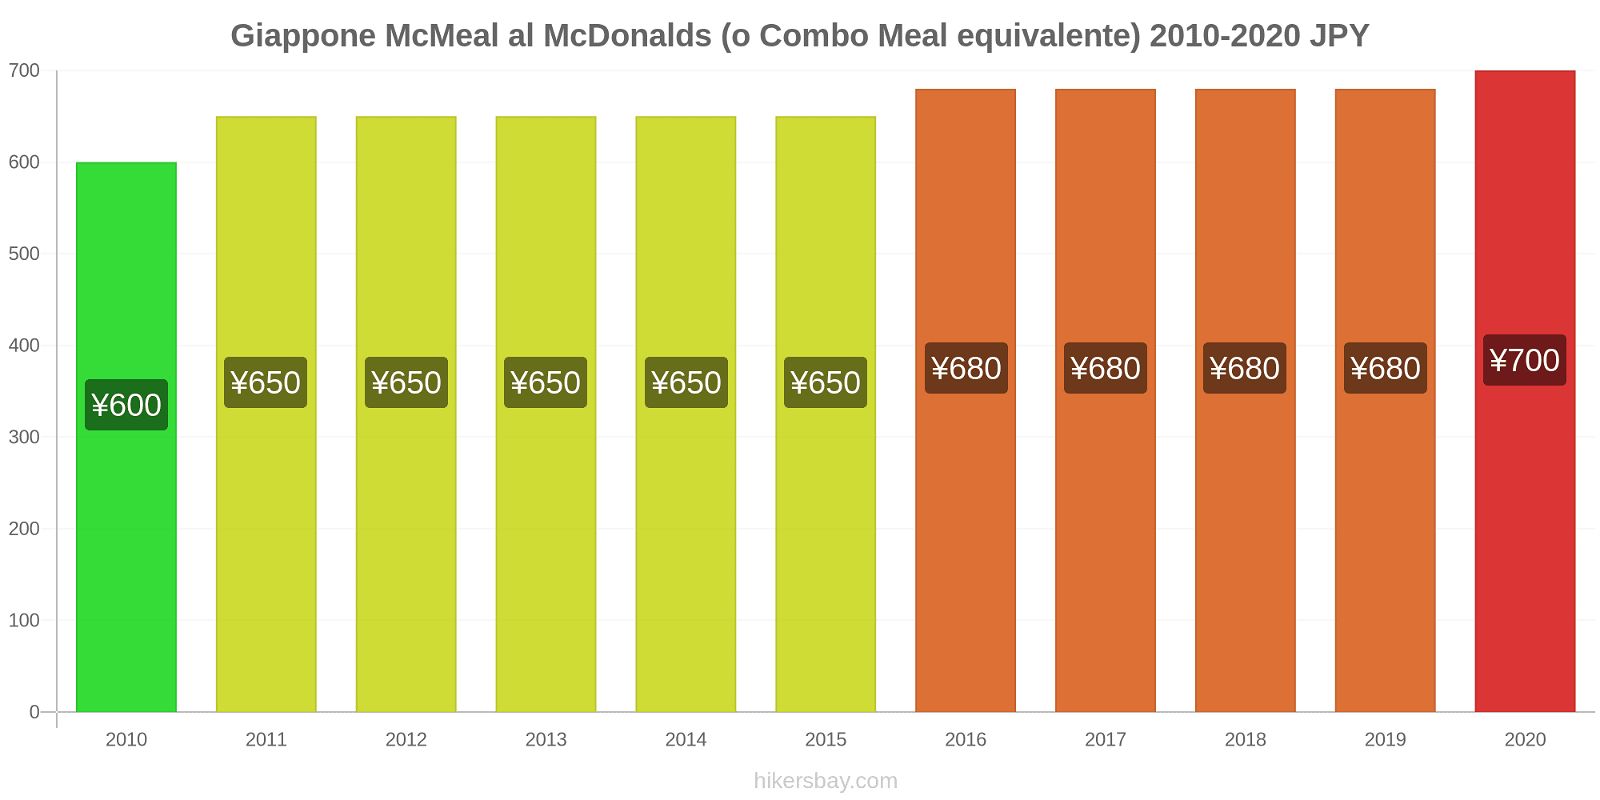 Giappone variazioni di prezzo McMeal al McDonalds (o in un equivalente fastfood) hikersbay.com